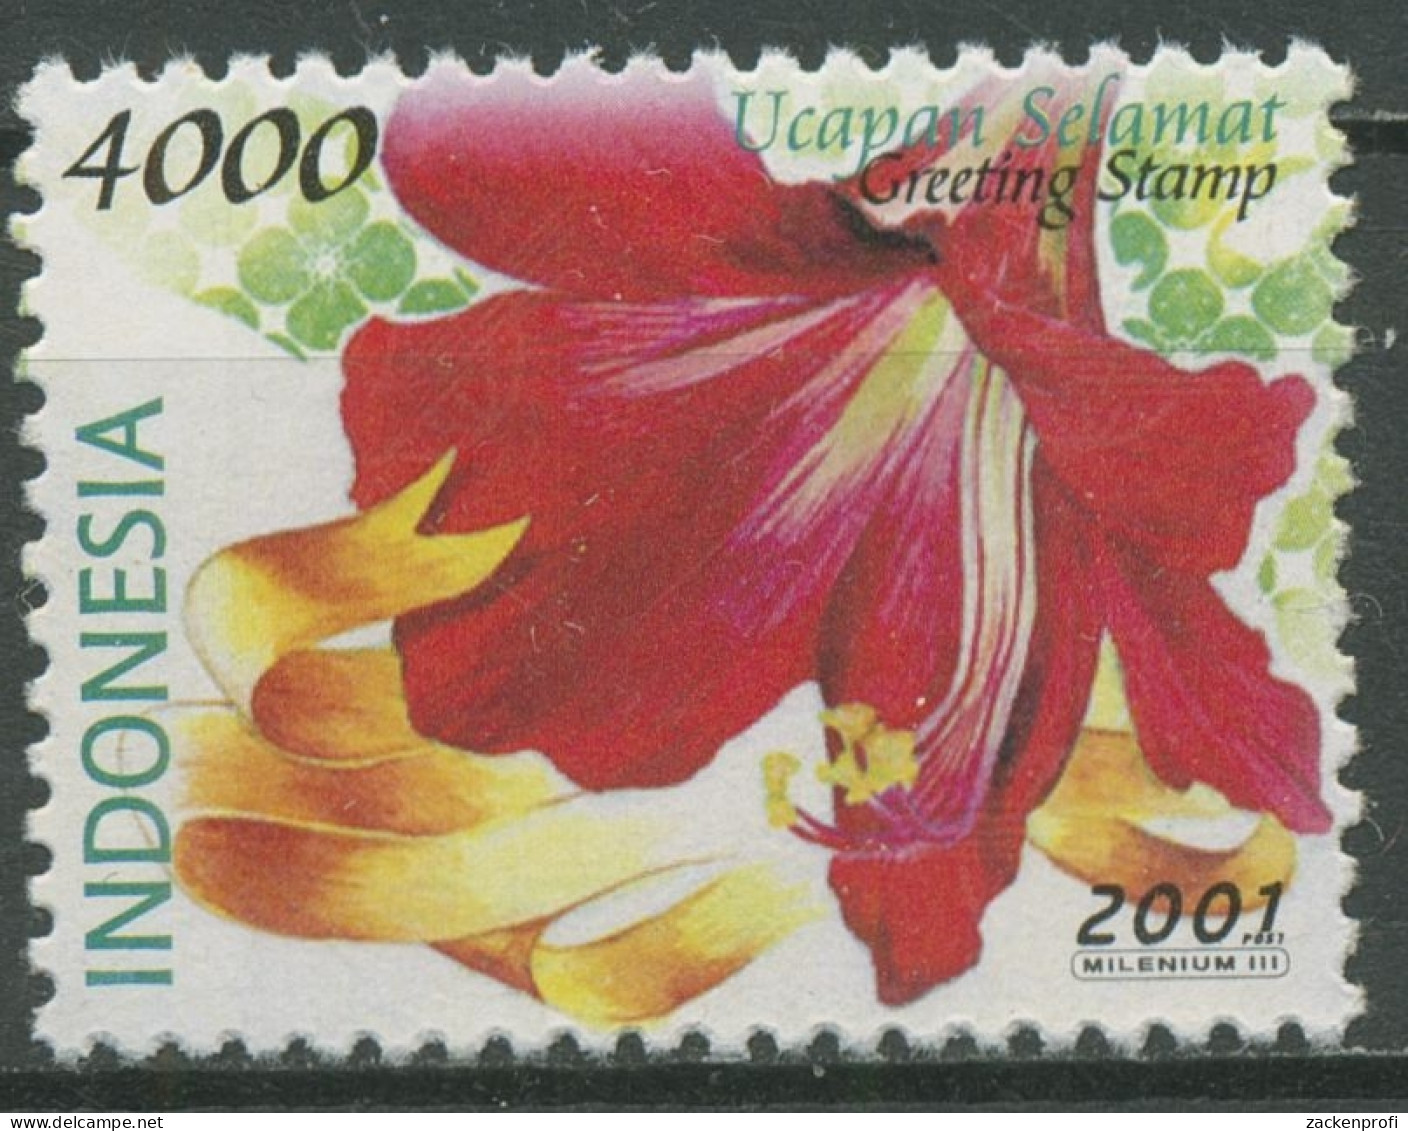 Indonesien 2001 Grußmarken Blumen Amaryllis 2106 Postfrisch - Indonesien